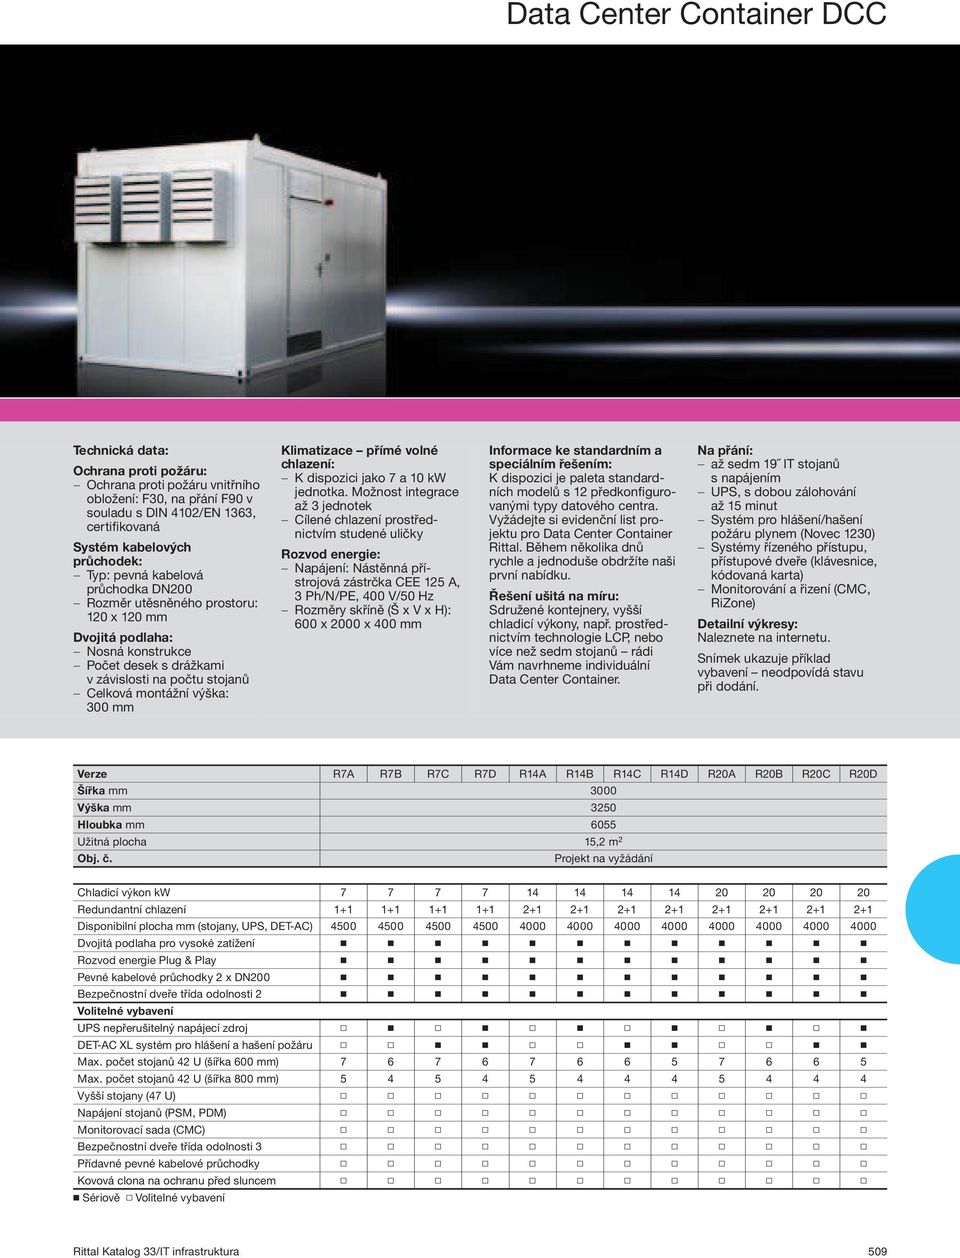 Klimatizace přímé volné chlazení: K dispozici jako 7 a 10 kw jednotka.